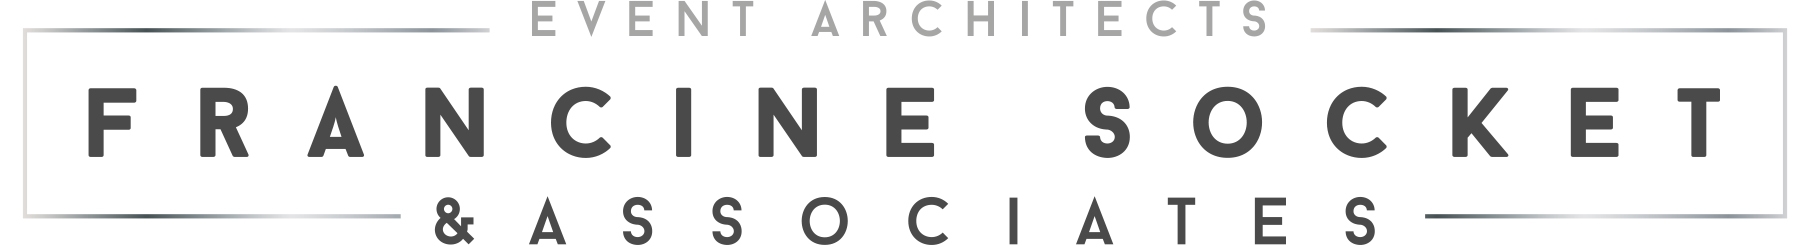 Francine Socket and Associates logo